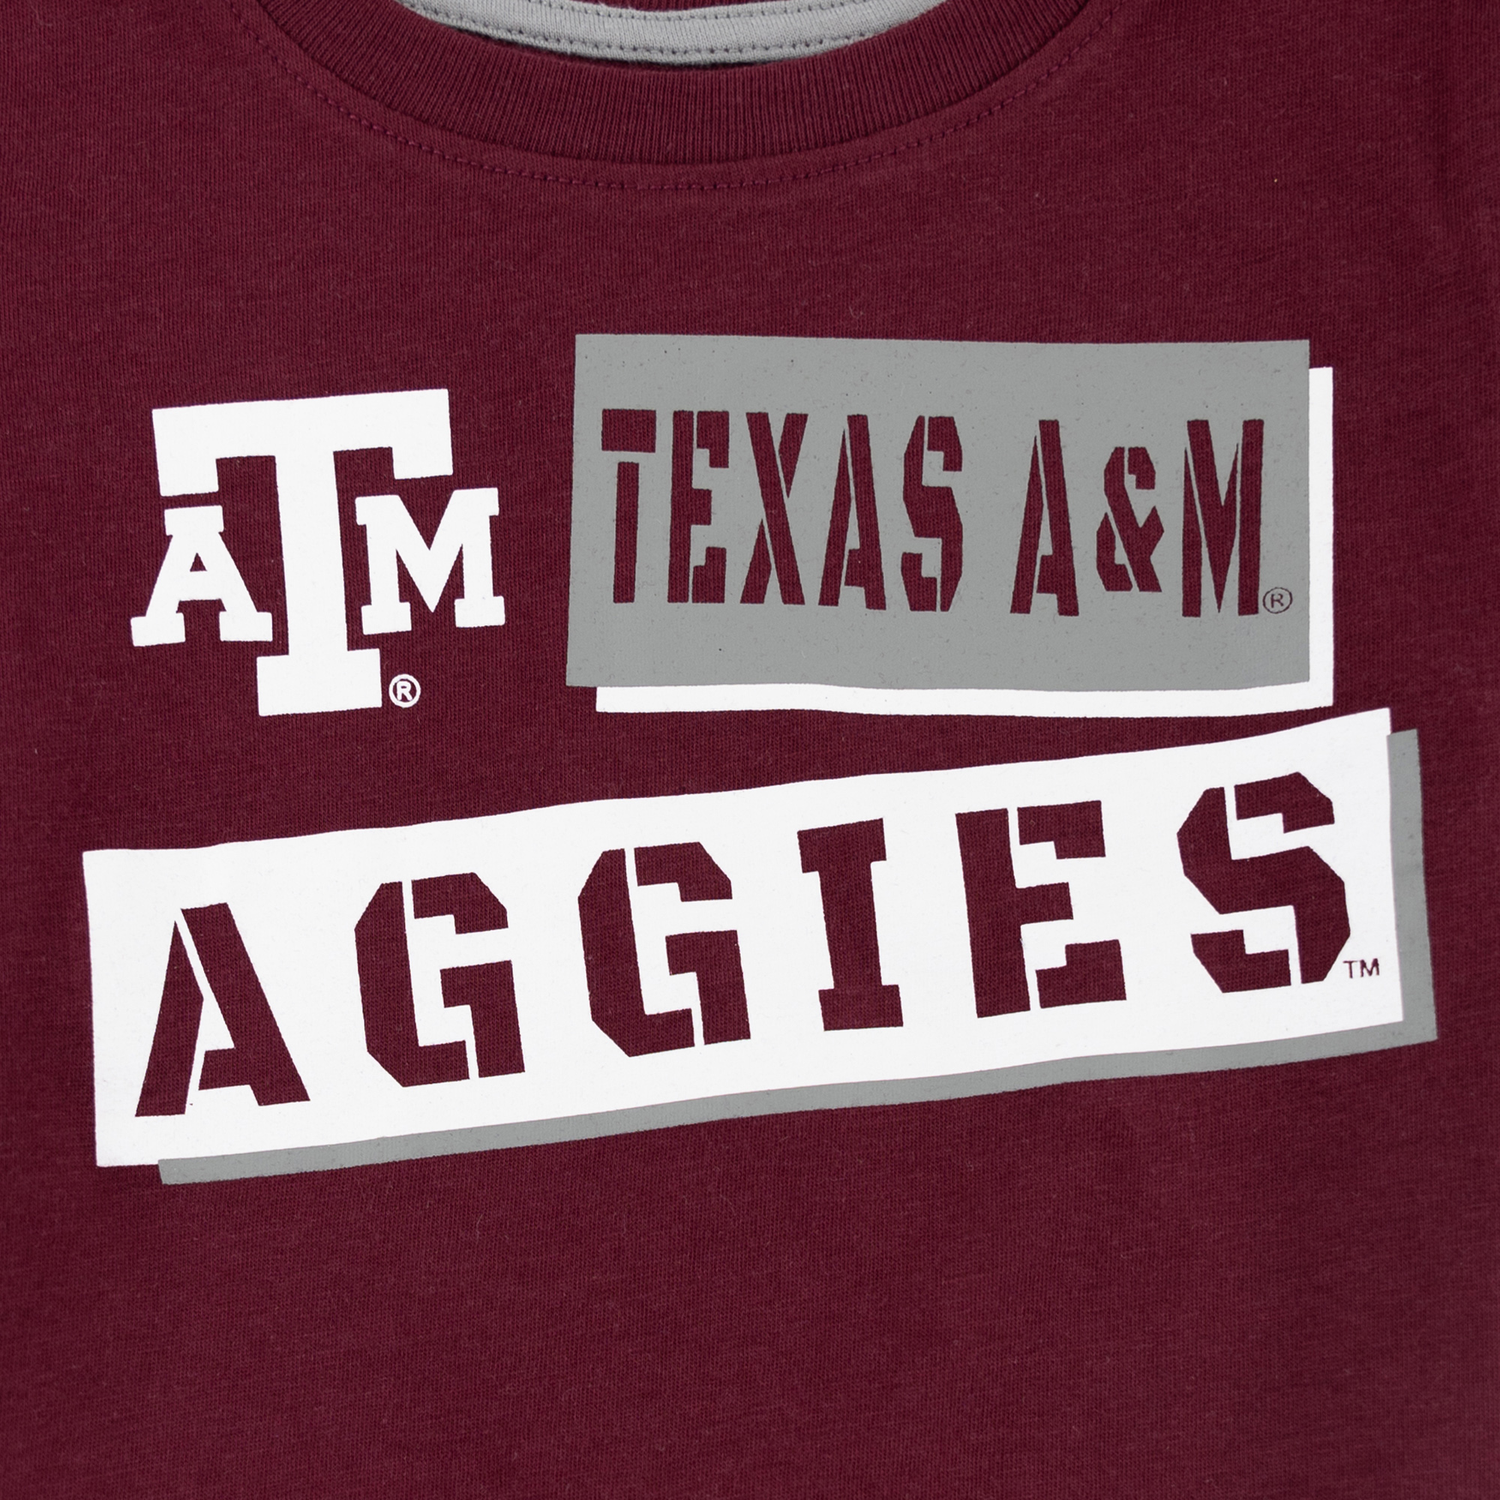 Texas A&M Aggies Toddler No Vacancy Tee